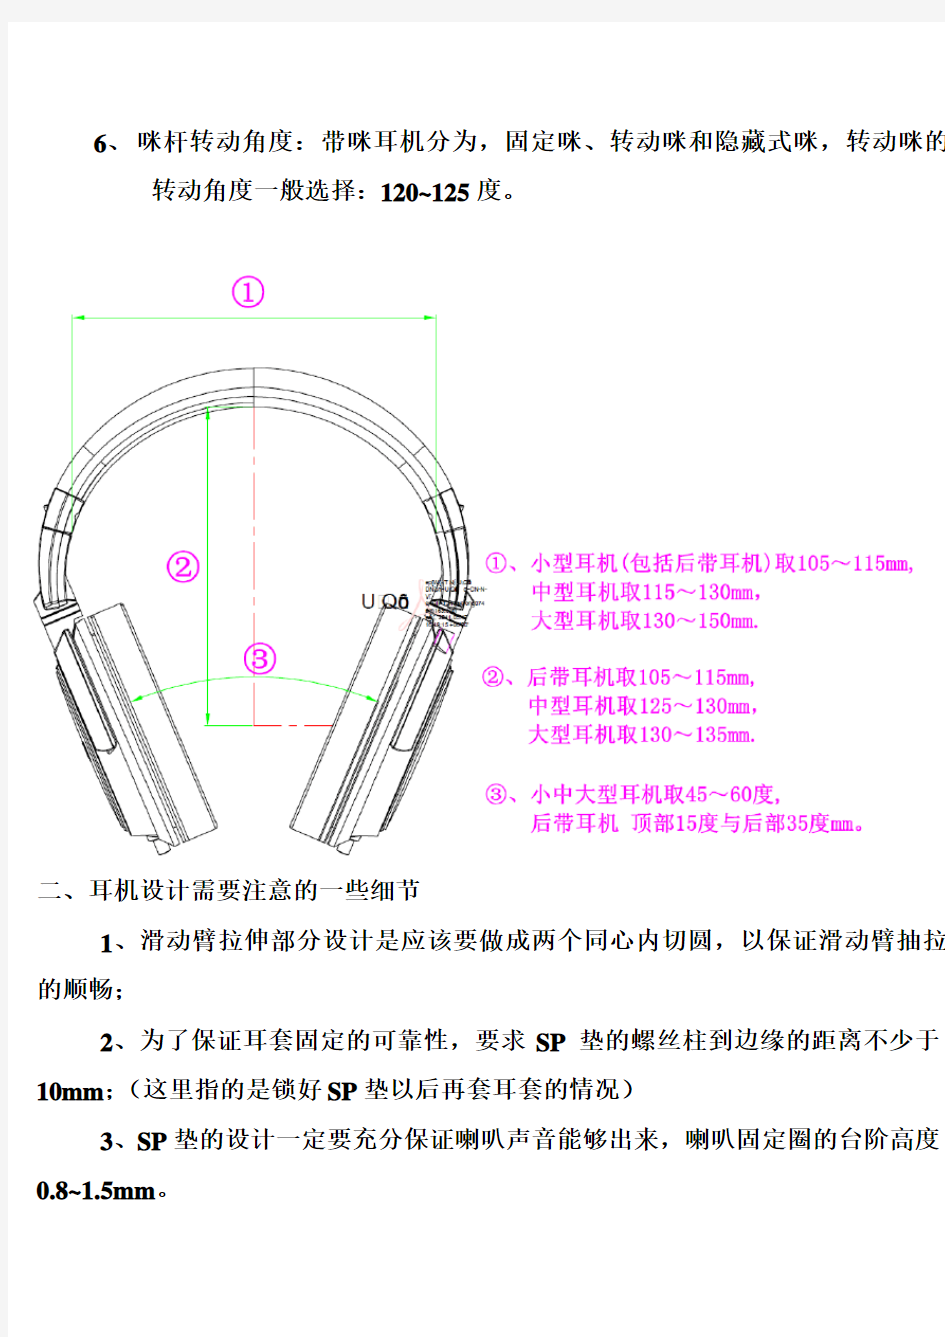 耳机设计的一些基本参数要求及规范